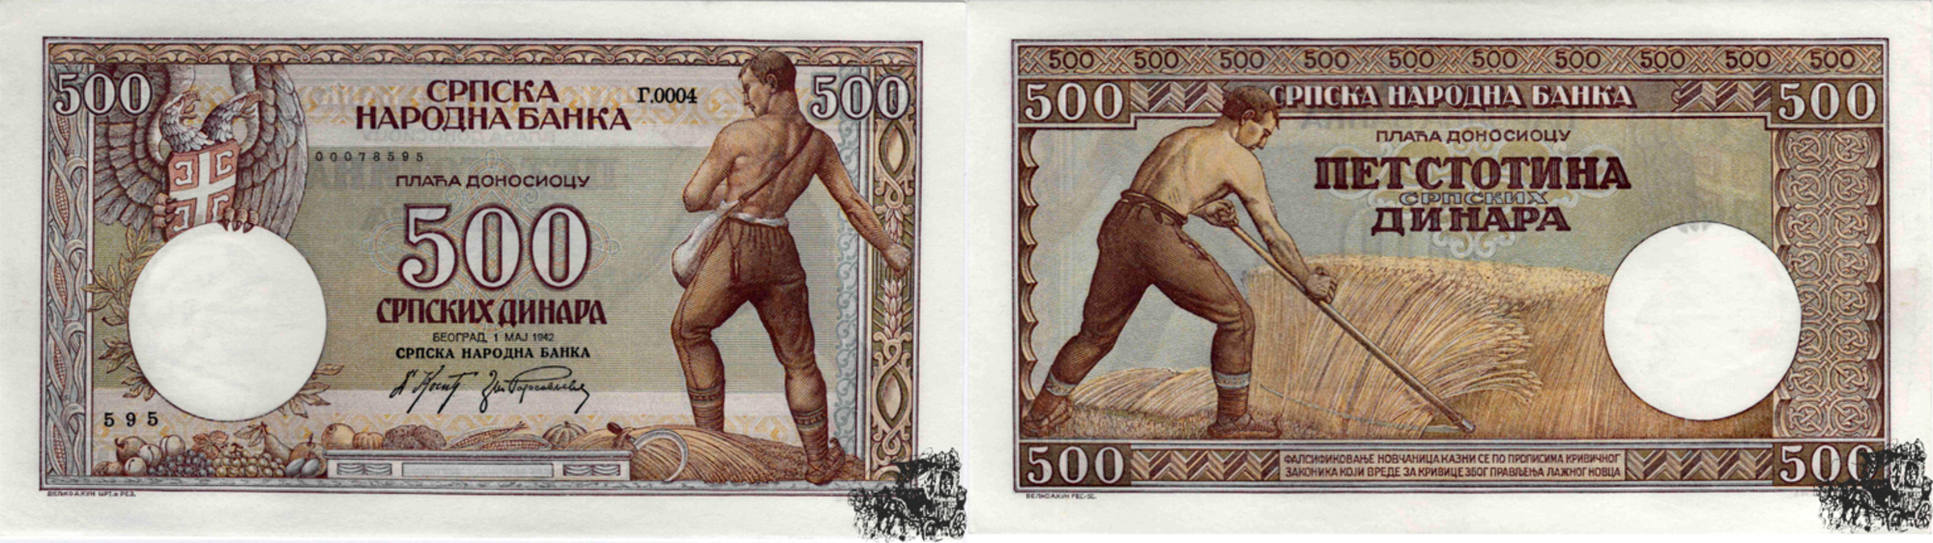 Сербская валюта к рублю. 500 Сербских динаров. Валюта Сербии курс к рублю.